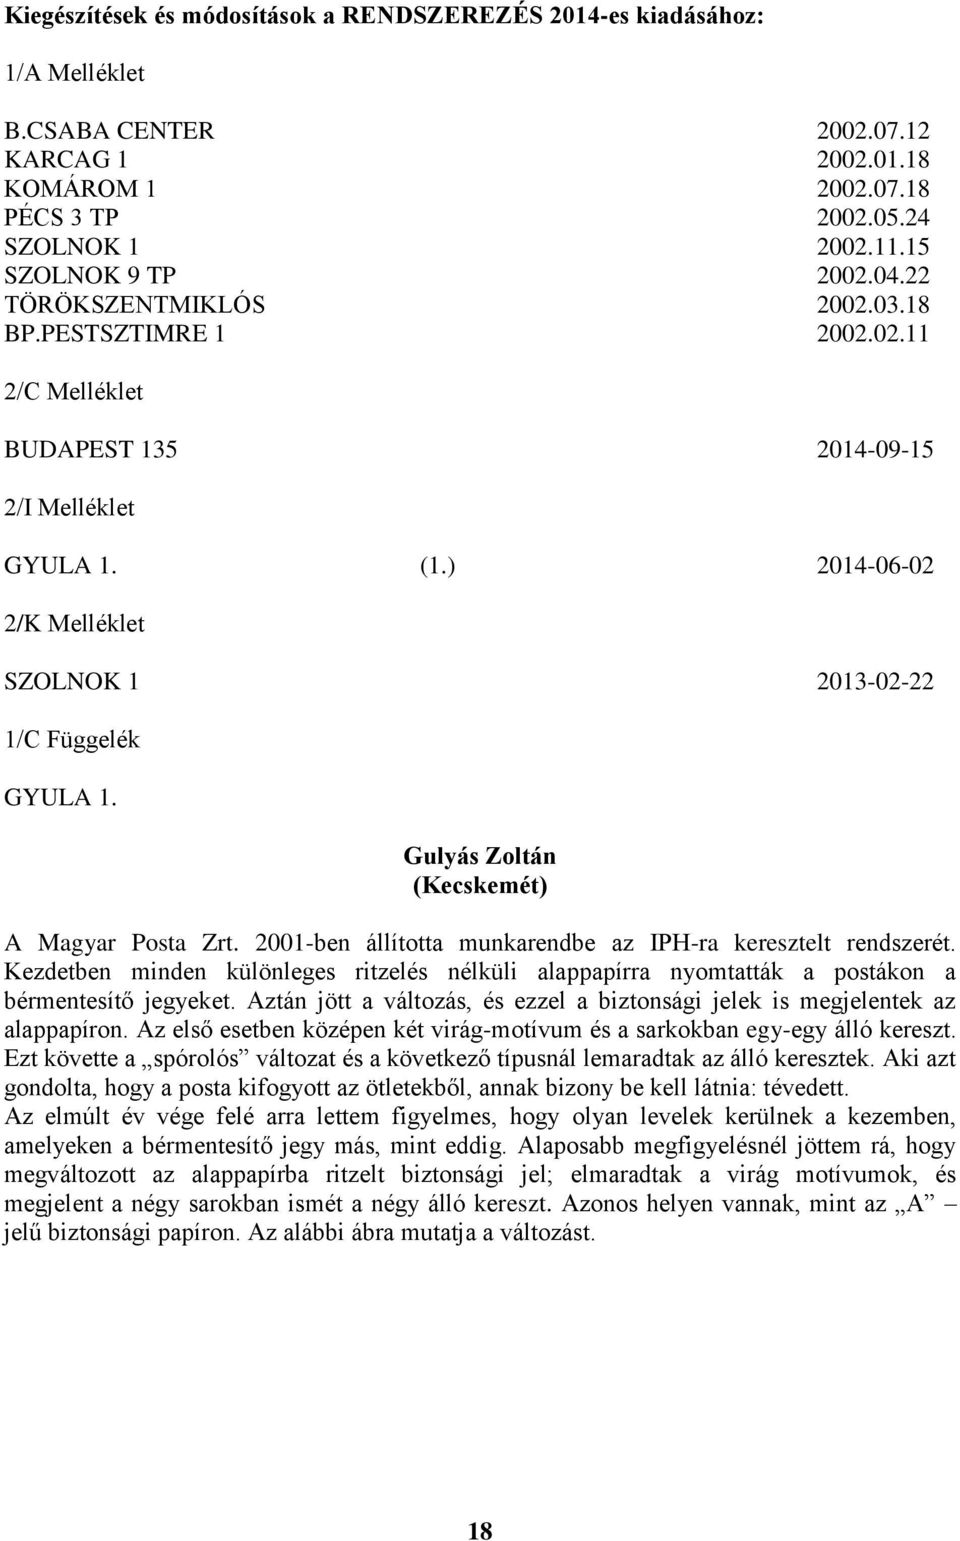 ) 2014-06-02 2/K Melléklet SZOLNOK 1 2013-02-22 1/C Függelék GYULA 1. Gulyás Zoltán (Kecskemét) A Magyar Posta Zrt. 2001-ben állította munkarendbe az IPH-ra keresztelt rendszerét.